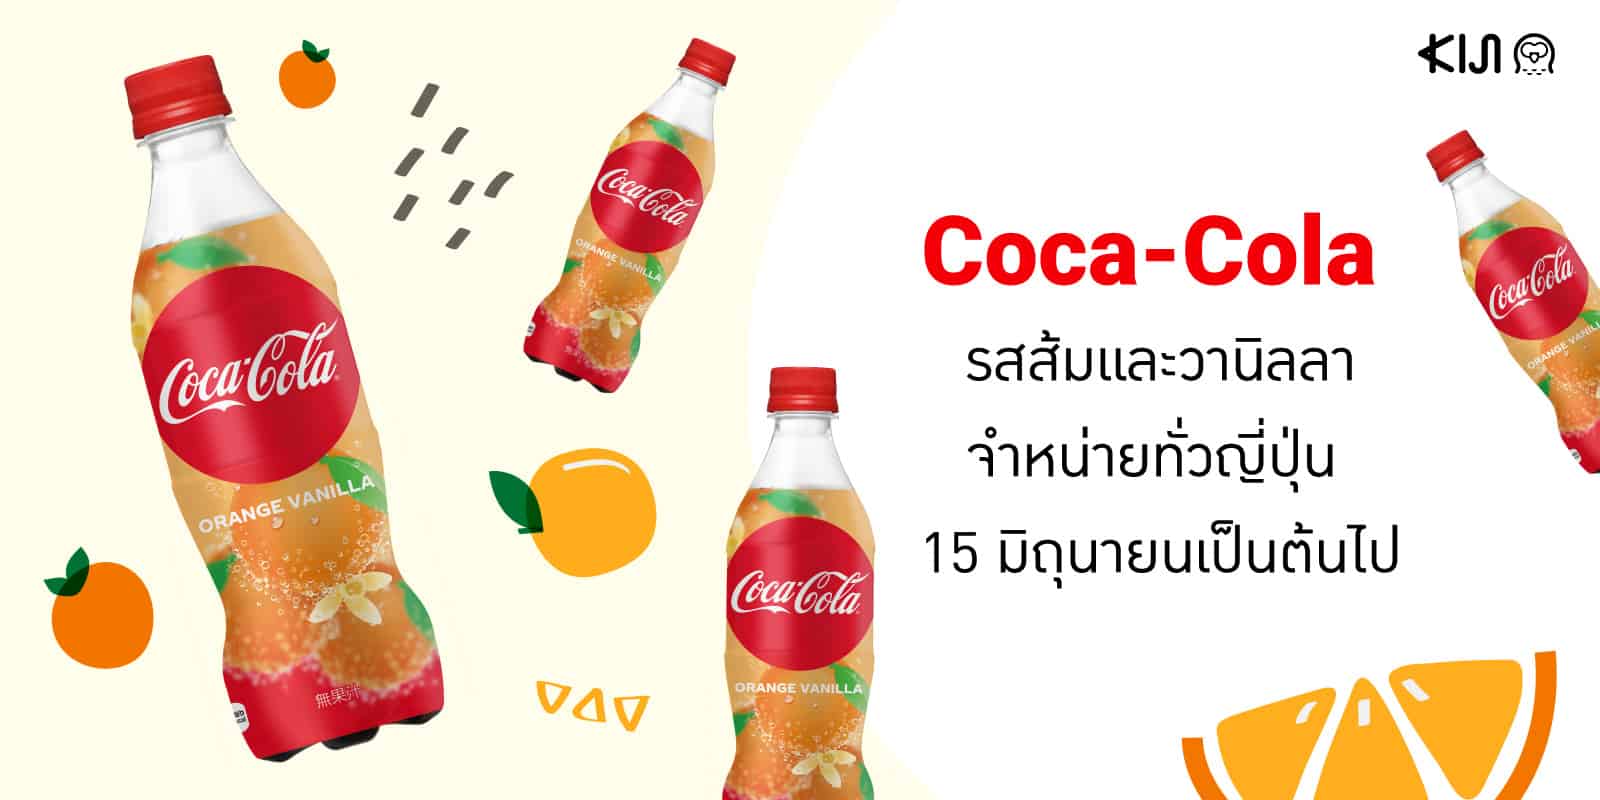 Coca-Cola รสส้มและวานิลลา จำหน่าย 15 มิถุนายนนี้